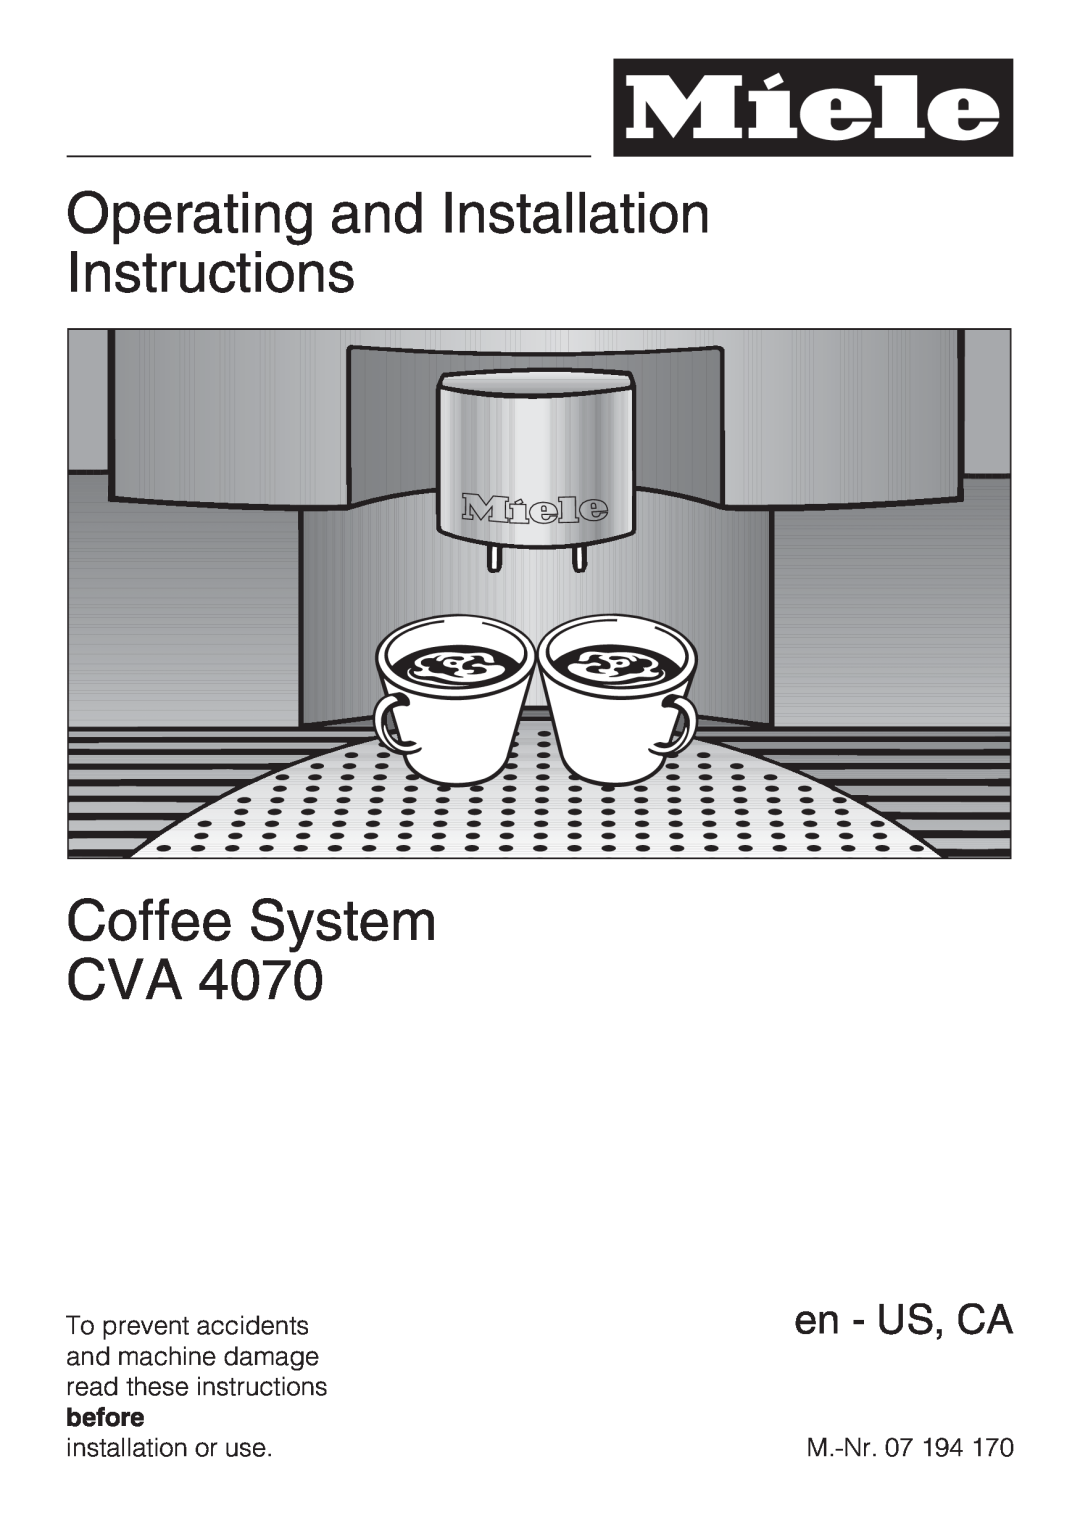 Miele CVA 4070 installation instructions Operating and Installation Instructions, Coffee System CVA, en - US, CA 